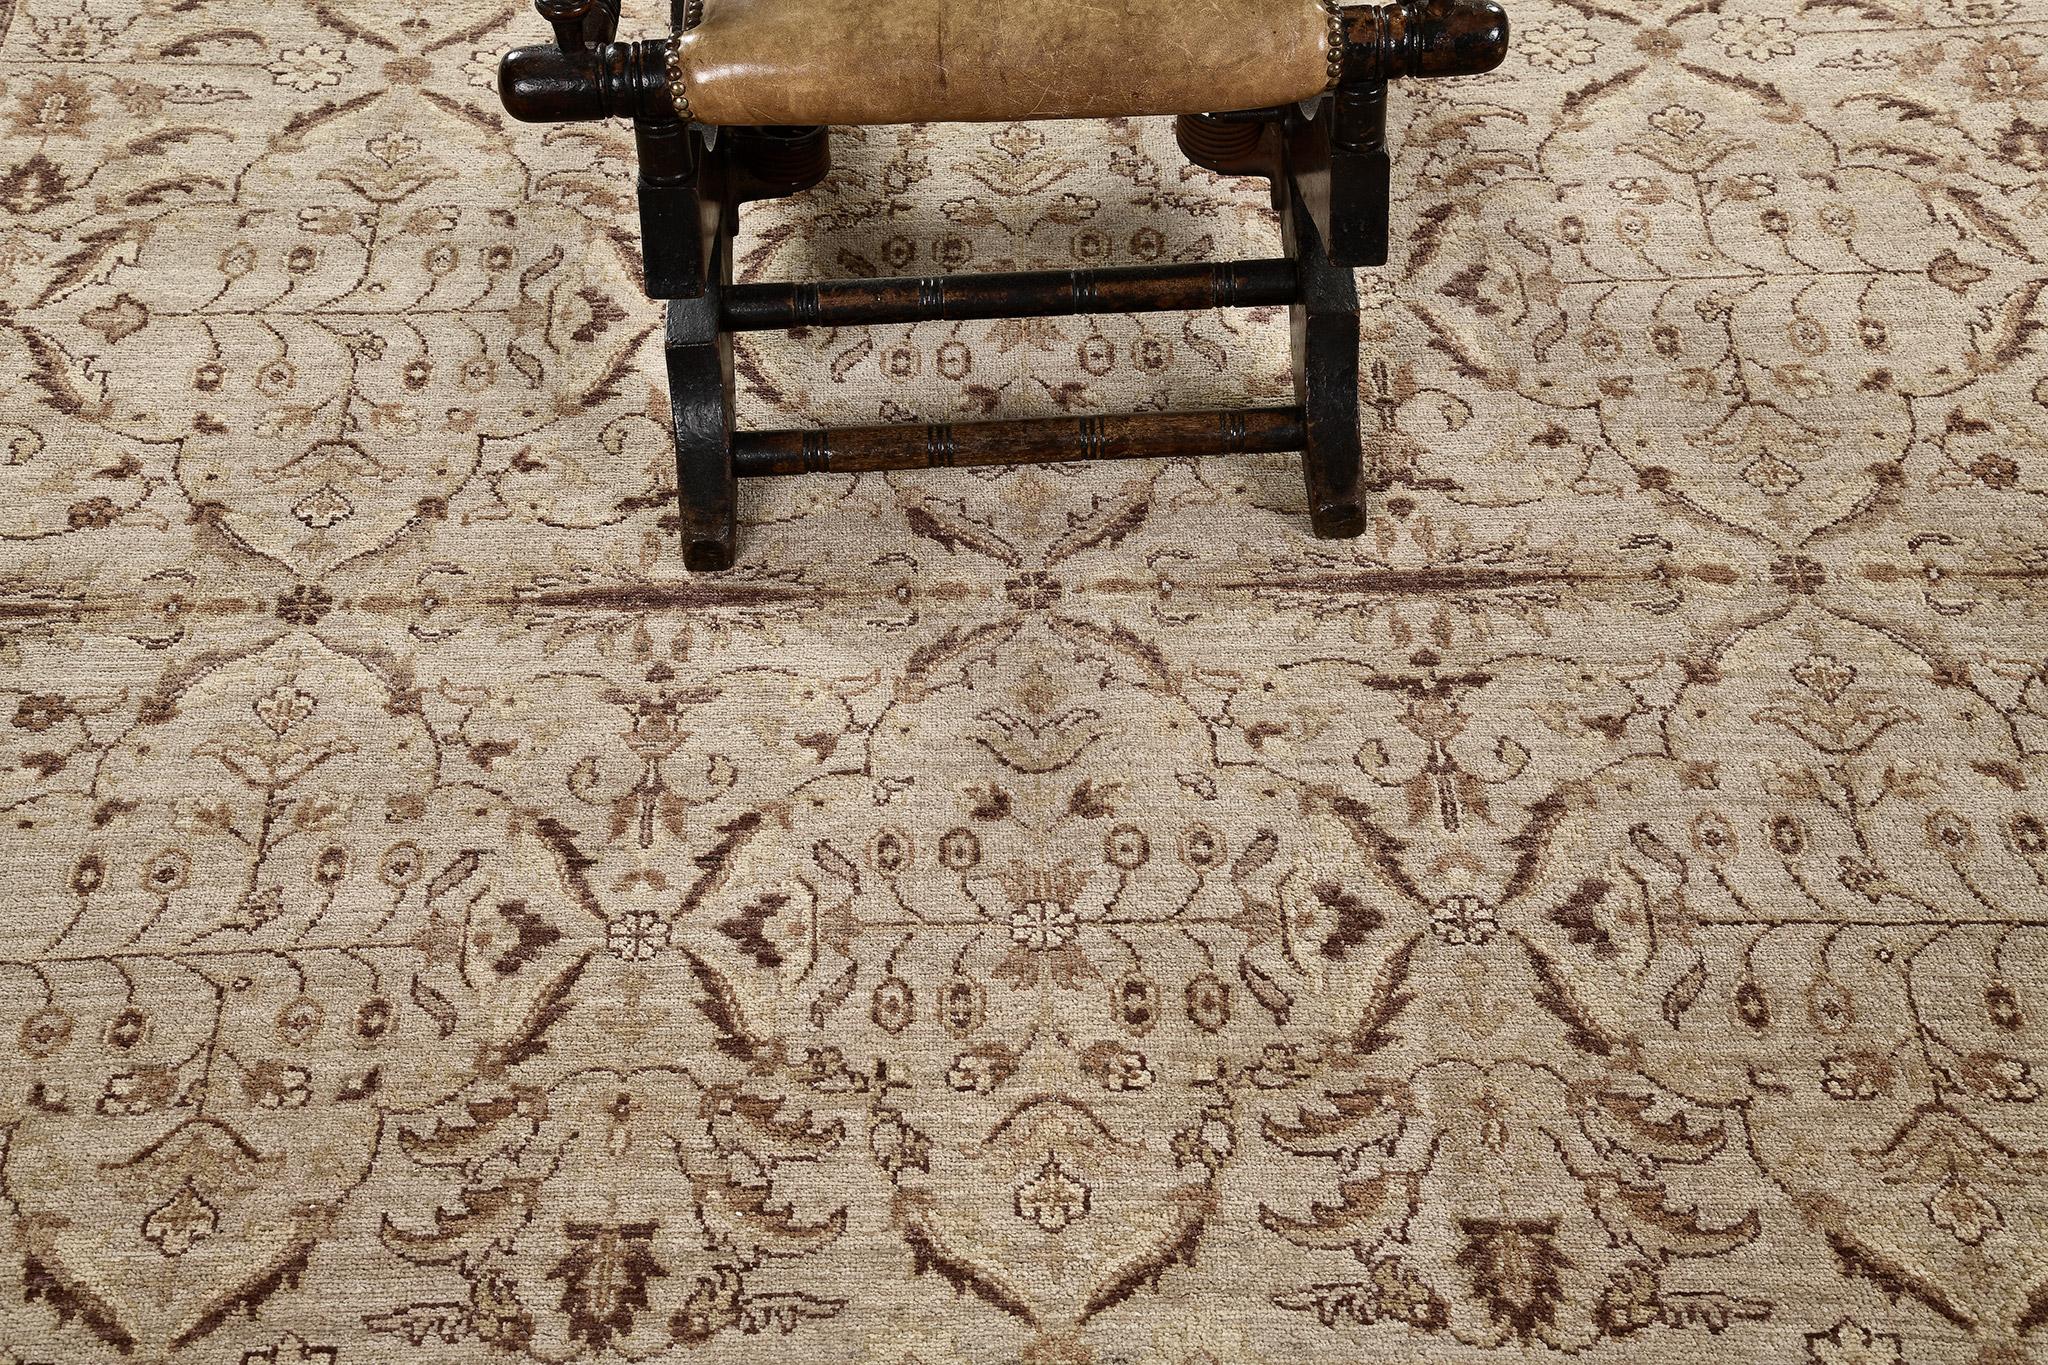 Denken Sie an ein europäisches oder westliches Thema mit einem Hauch von Luxus? Dieser Teppich ist perfekt für Ihr Interieur! Dieser Amritsar Design-Teppich hat einen einzigartigen doppelten Schuss und symmetrische Knoten, die immer noch in Mode